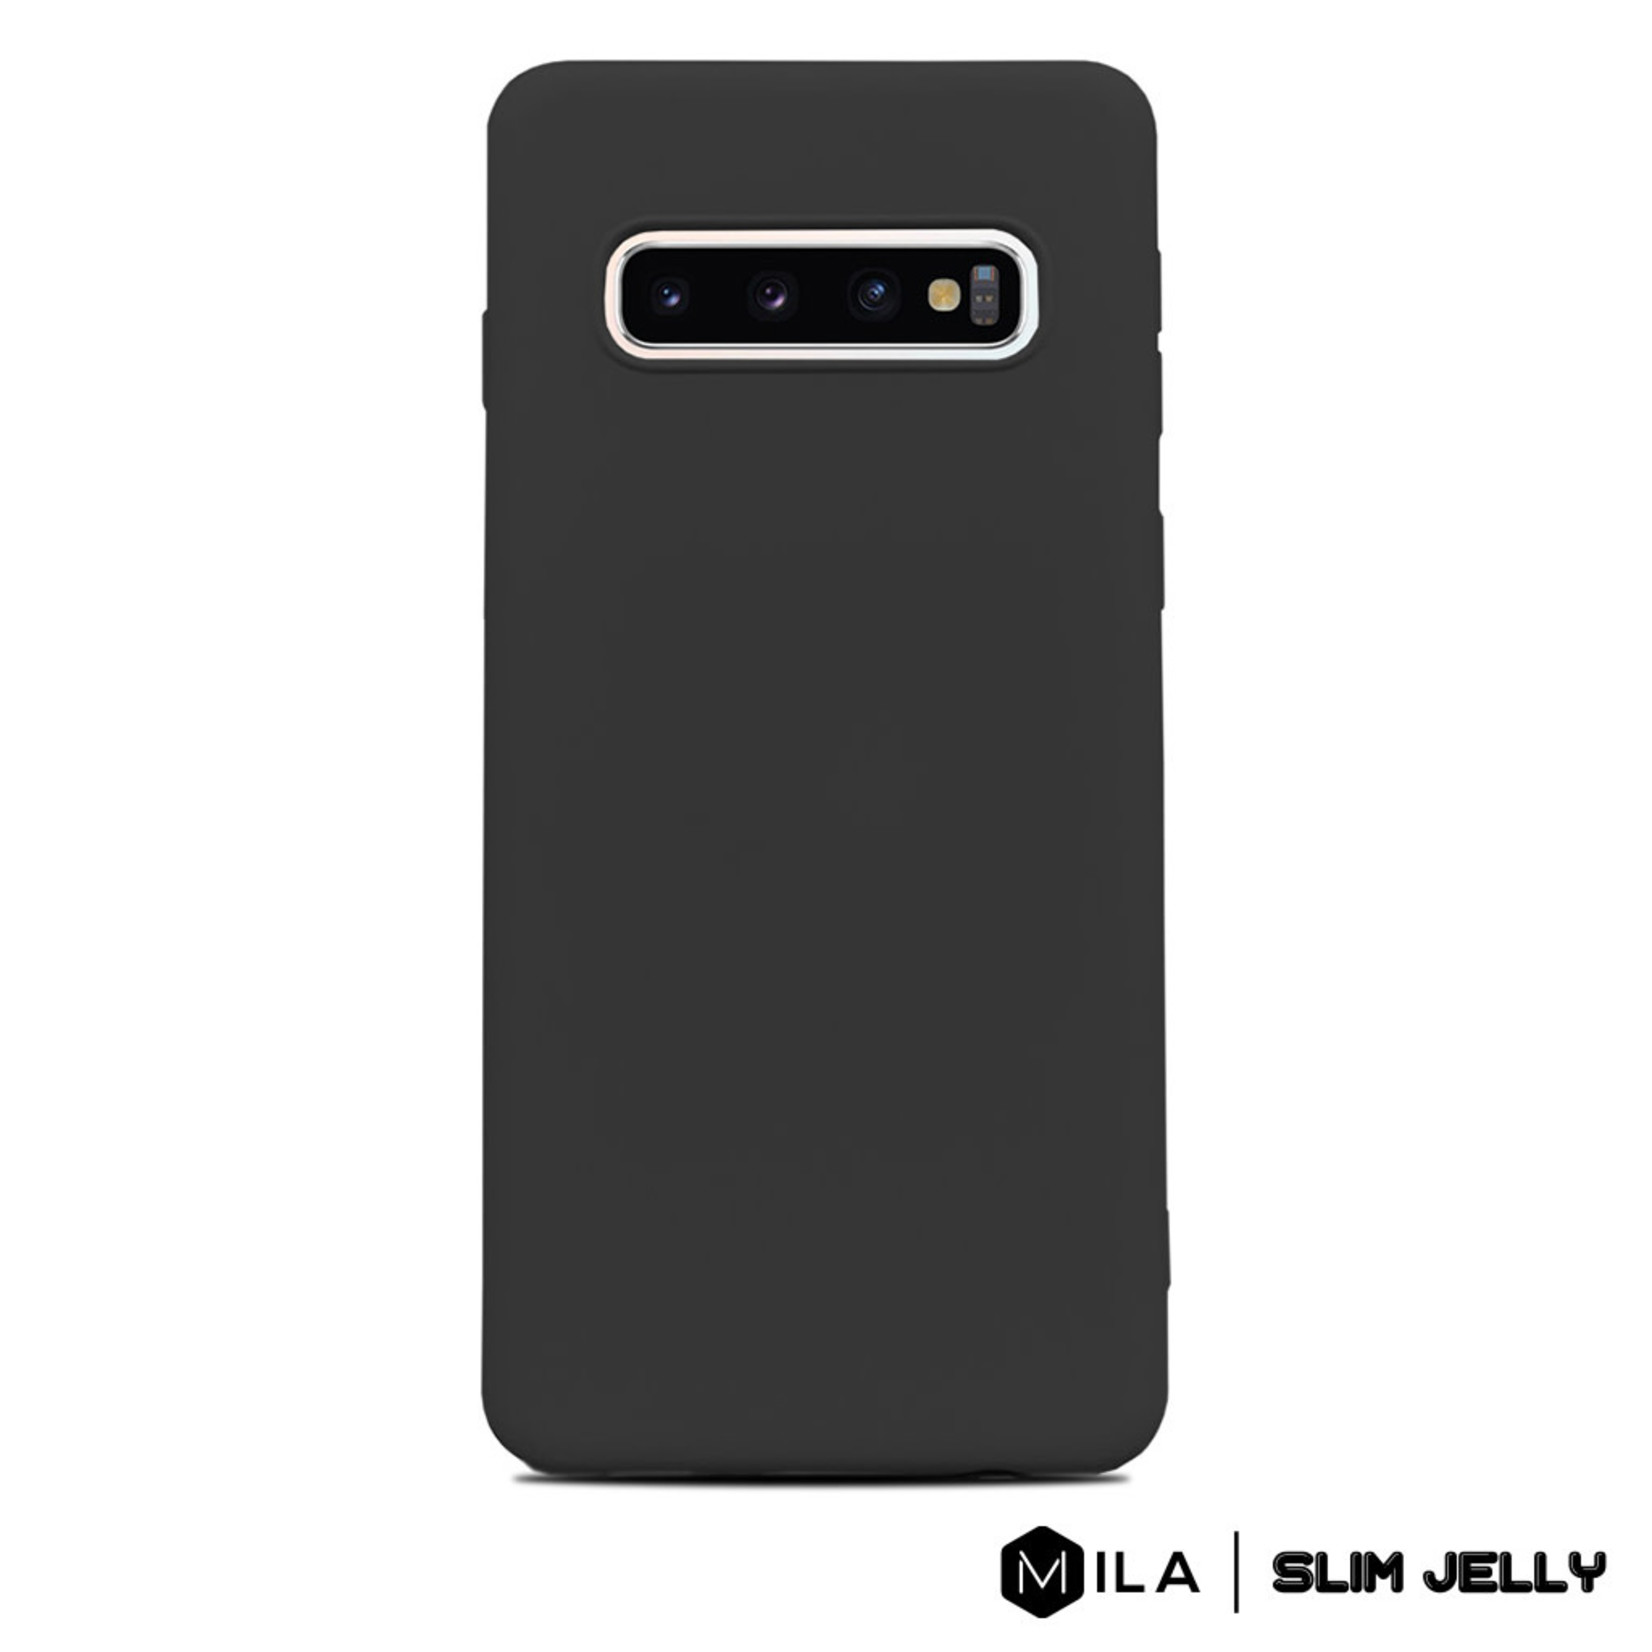 MILA | Slim Jelly Case for Galaxy S10e